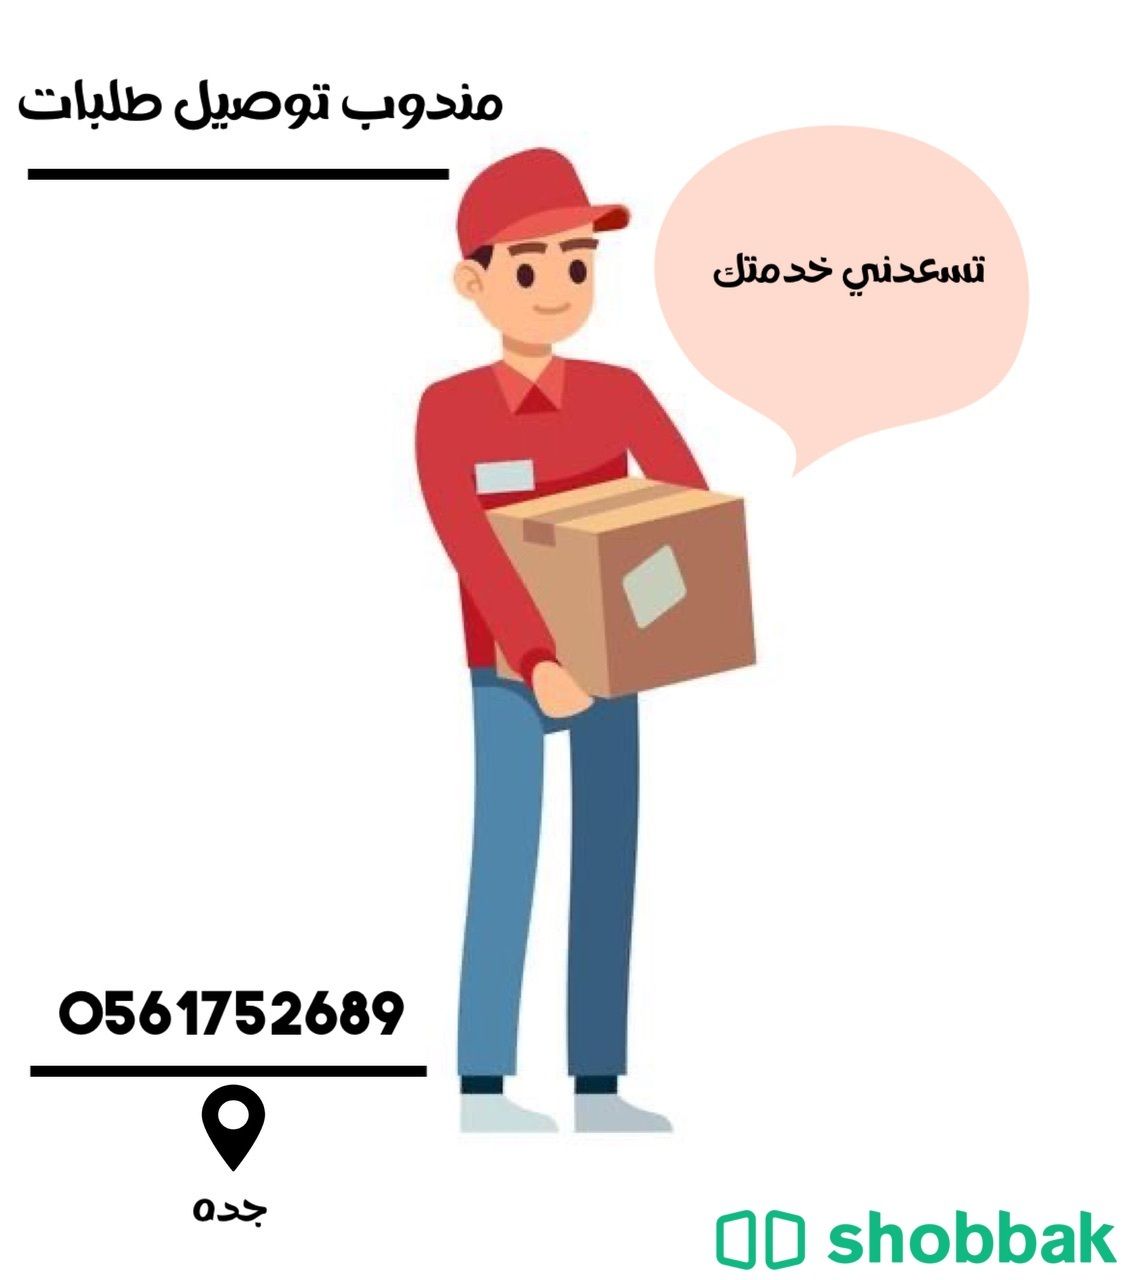 مندوب توصيل طلبات داخل جده Shobbak Saudi Arabia